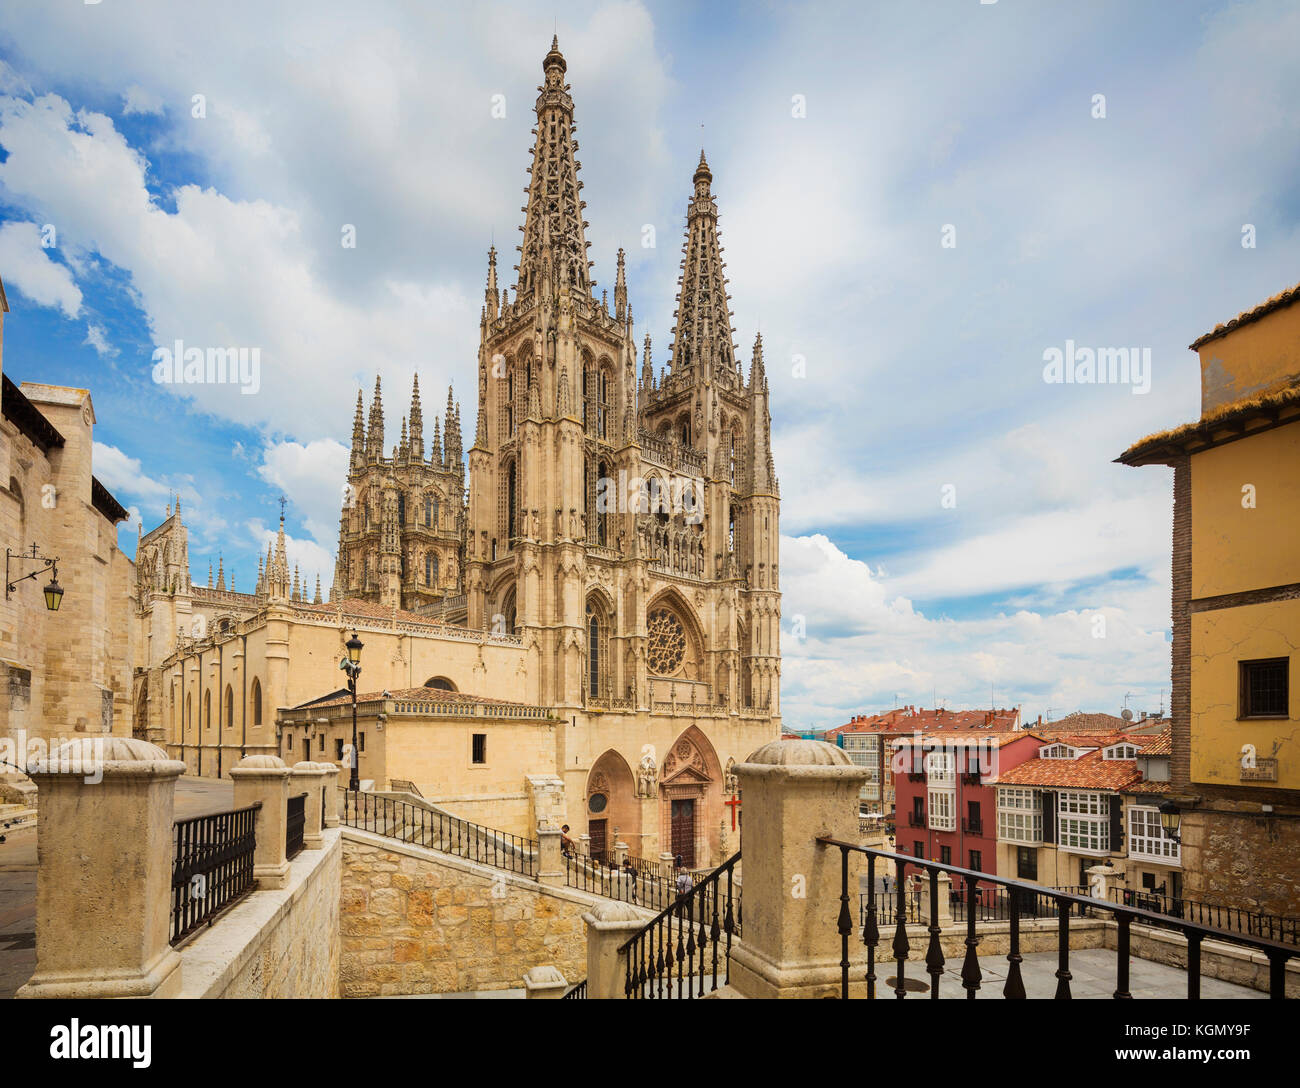 Burgos, provincia di Burgos, Castiglia y Leon, Spagna. la cattedrale gotica. costruzione iniziata nel XIII secolo e che è un sito patrimonio mondiale dell'UNESCO. Foto Stock